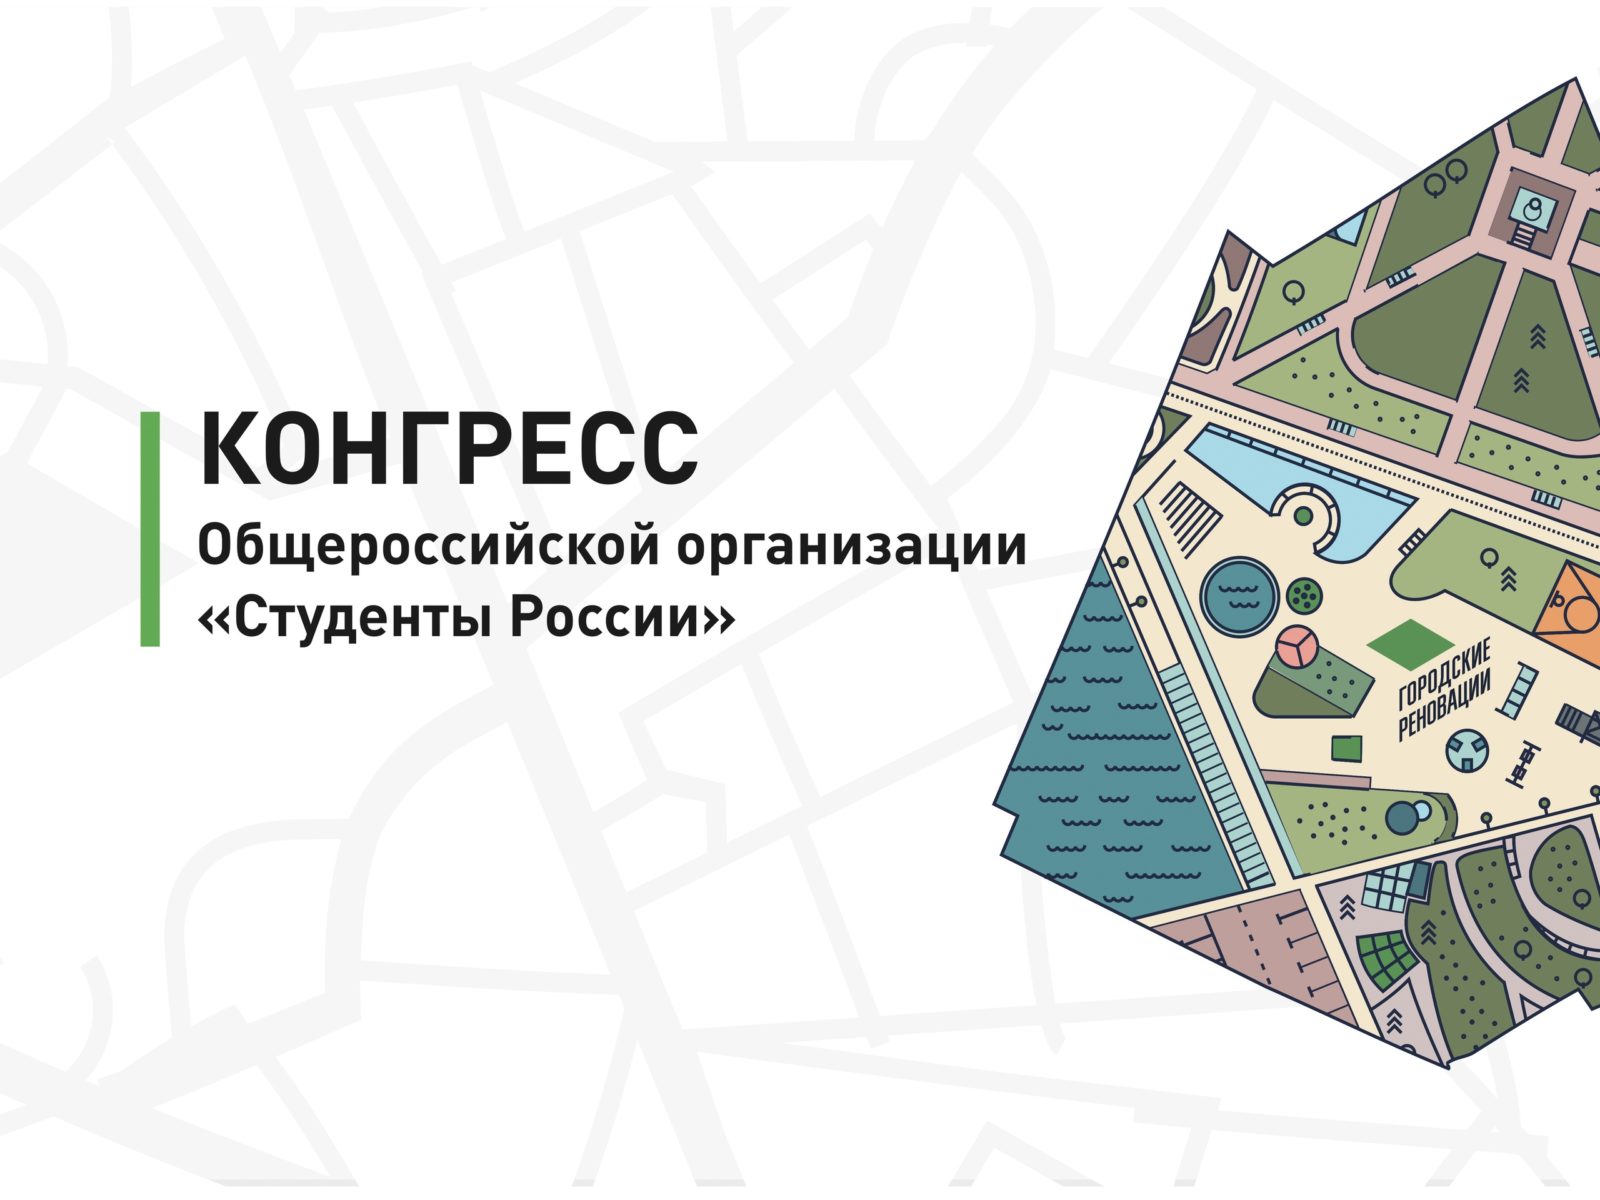 На Конгрессе Общероссийской организации «Студенты России» рассмотрят вопрос о реорганизации в «Городские реновации»